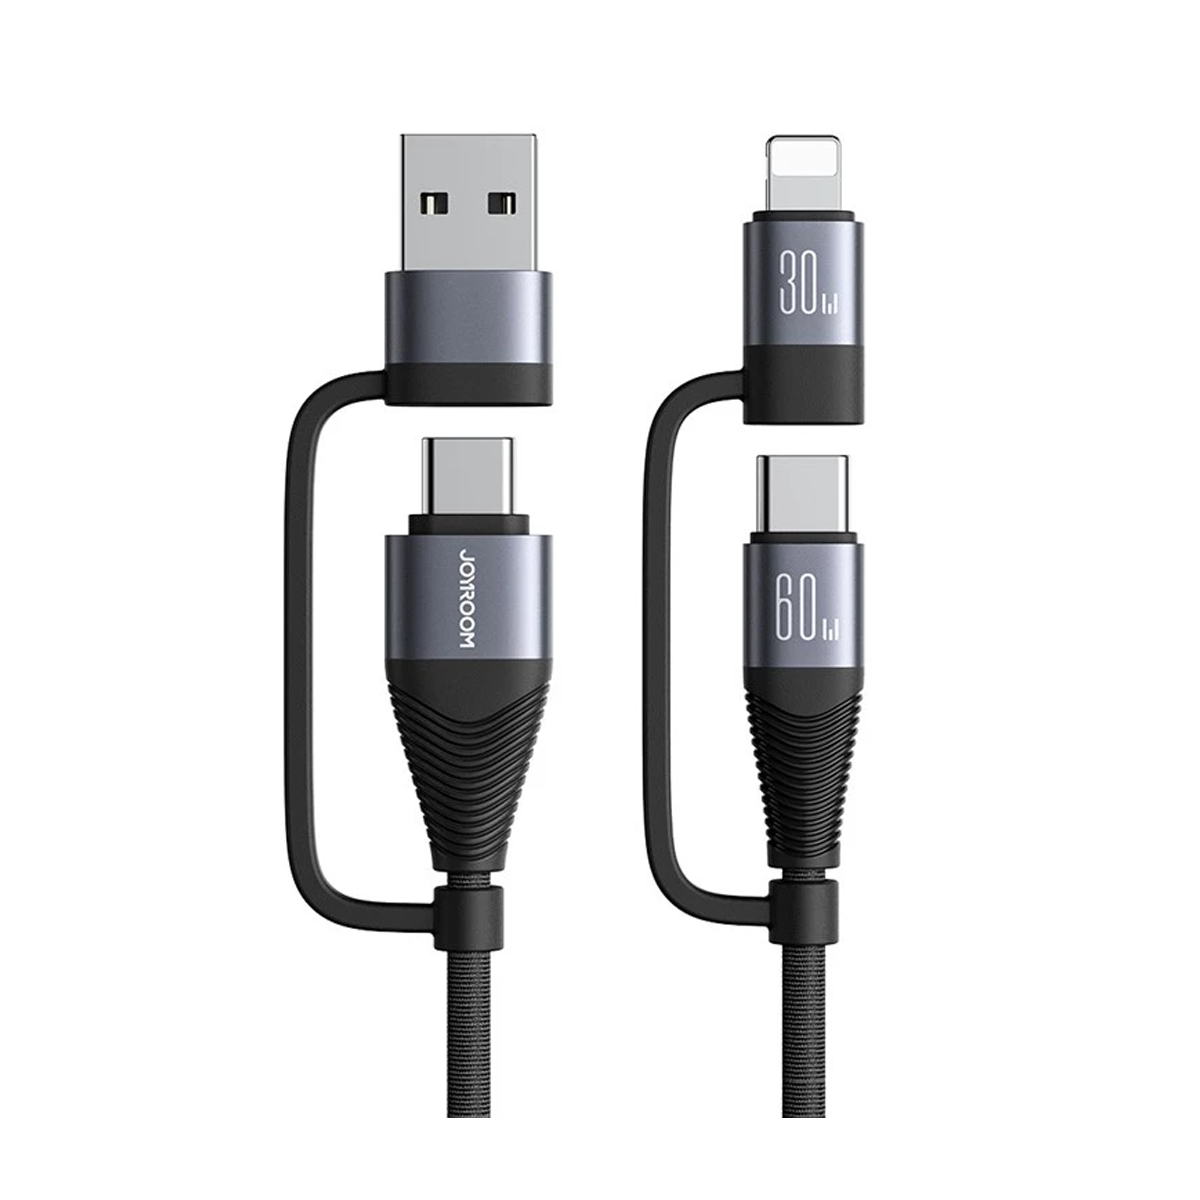  کابل تبدیل USB/USB-C به لایتنینگ/USB-C جوی روم مدل SA37-2T2 طول 1.2 متر-مشکی